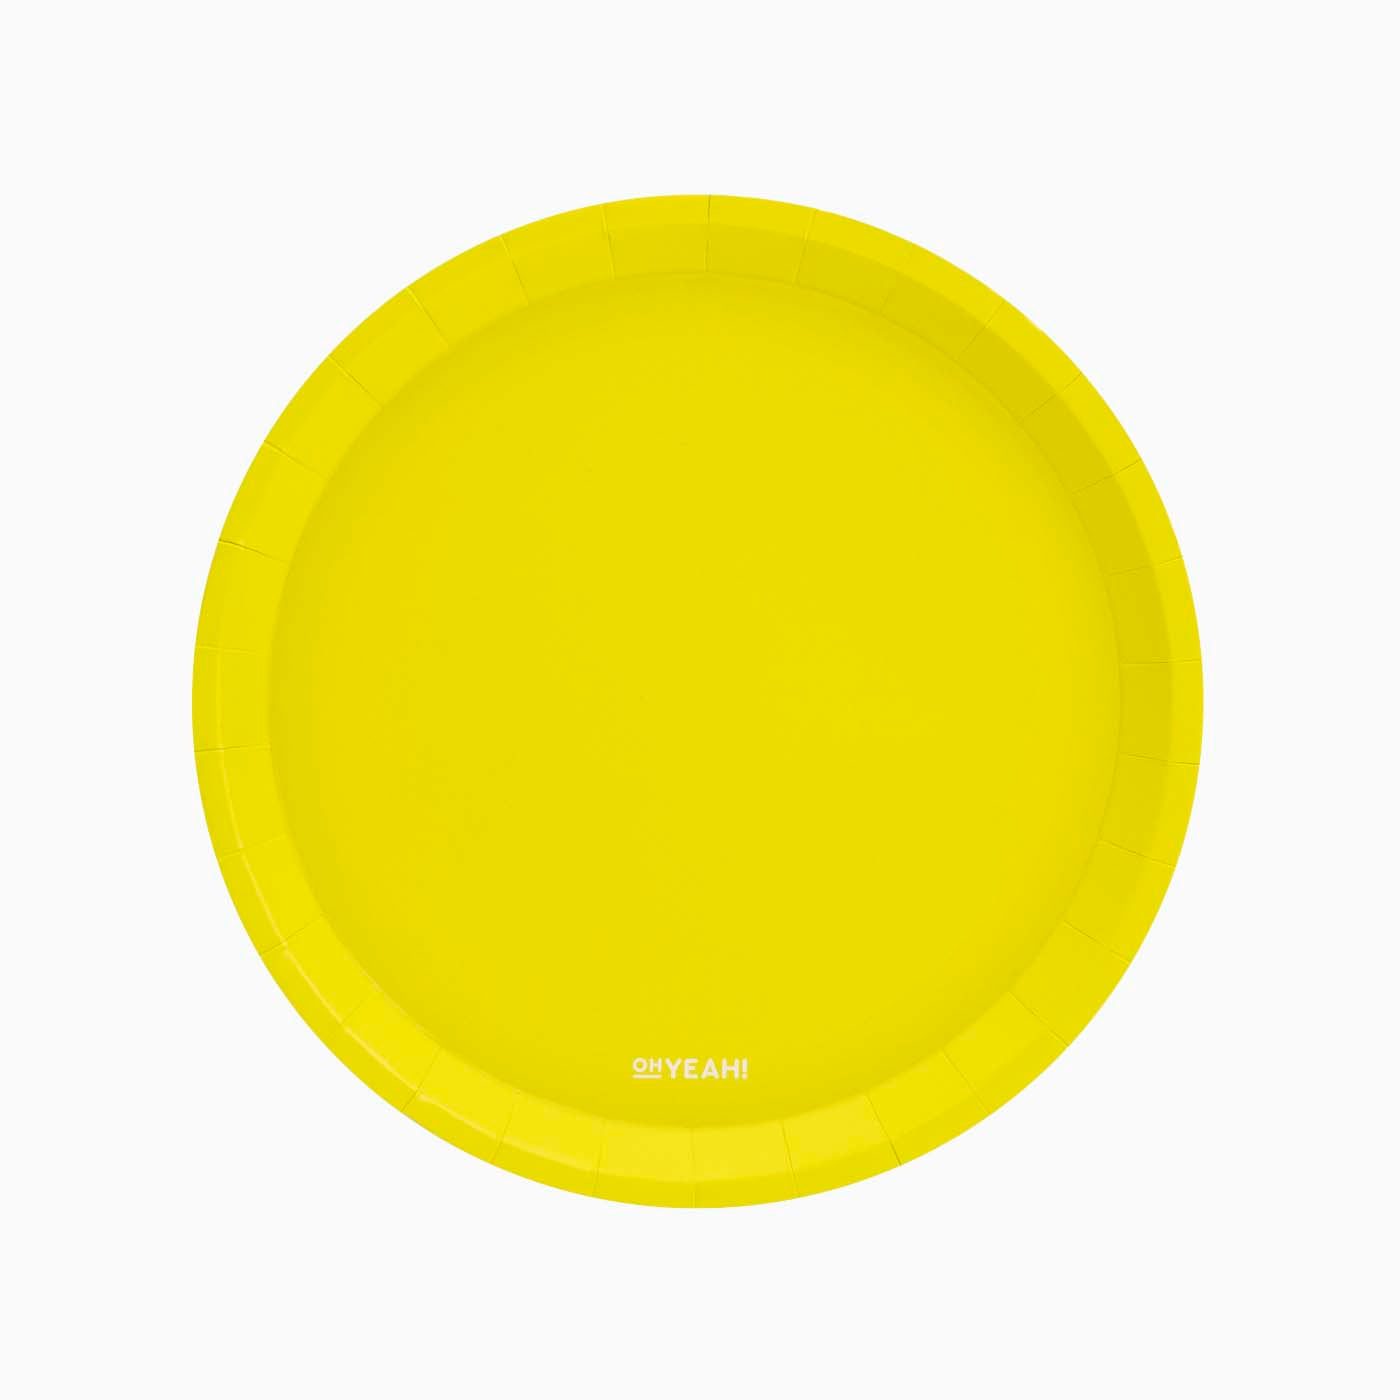 Cartone fluoro Ø 20,5 cm giallo